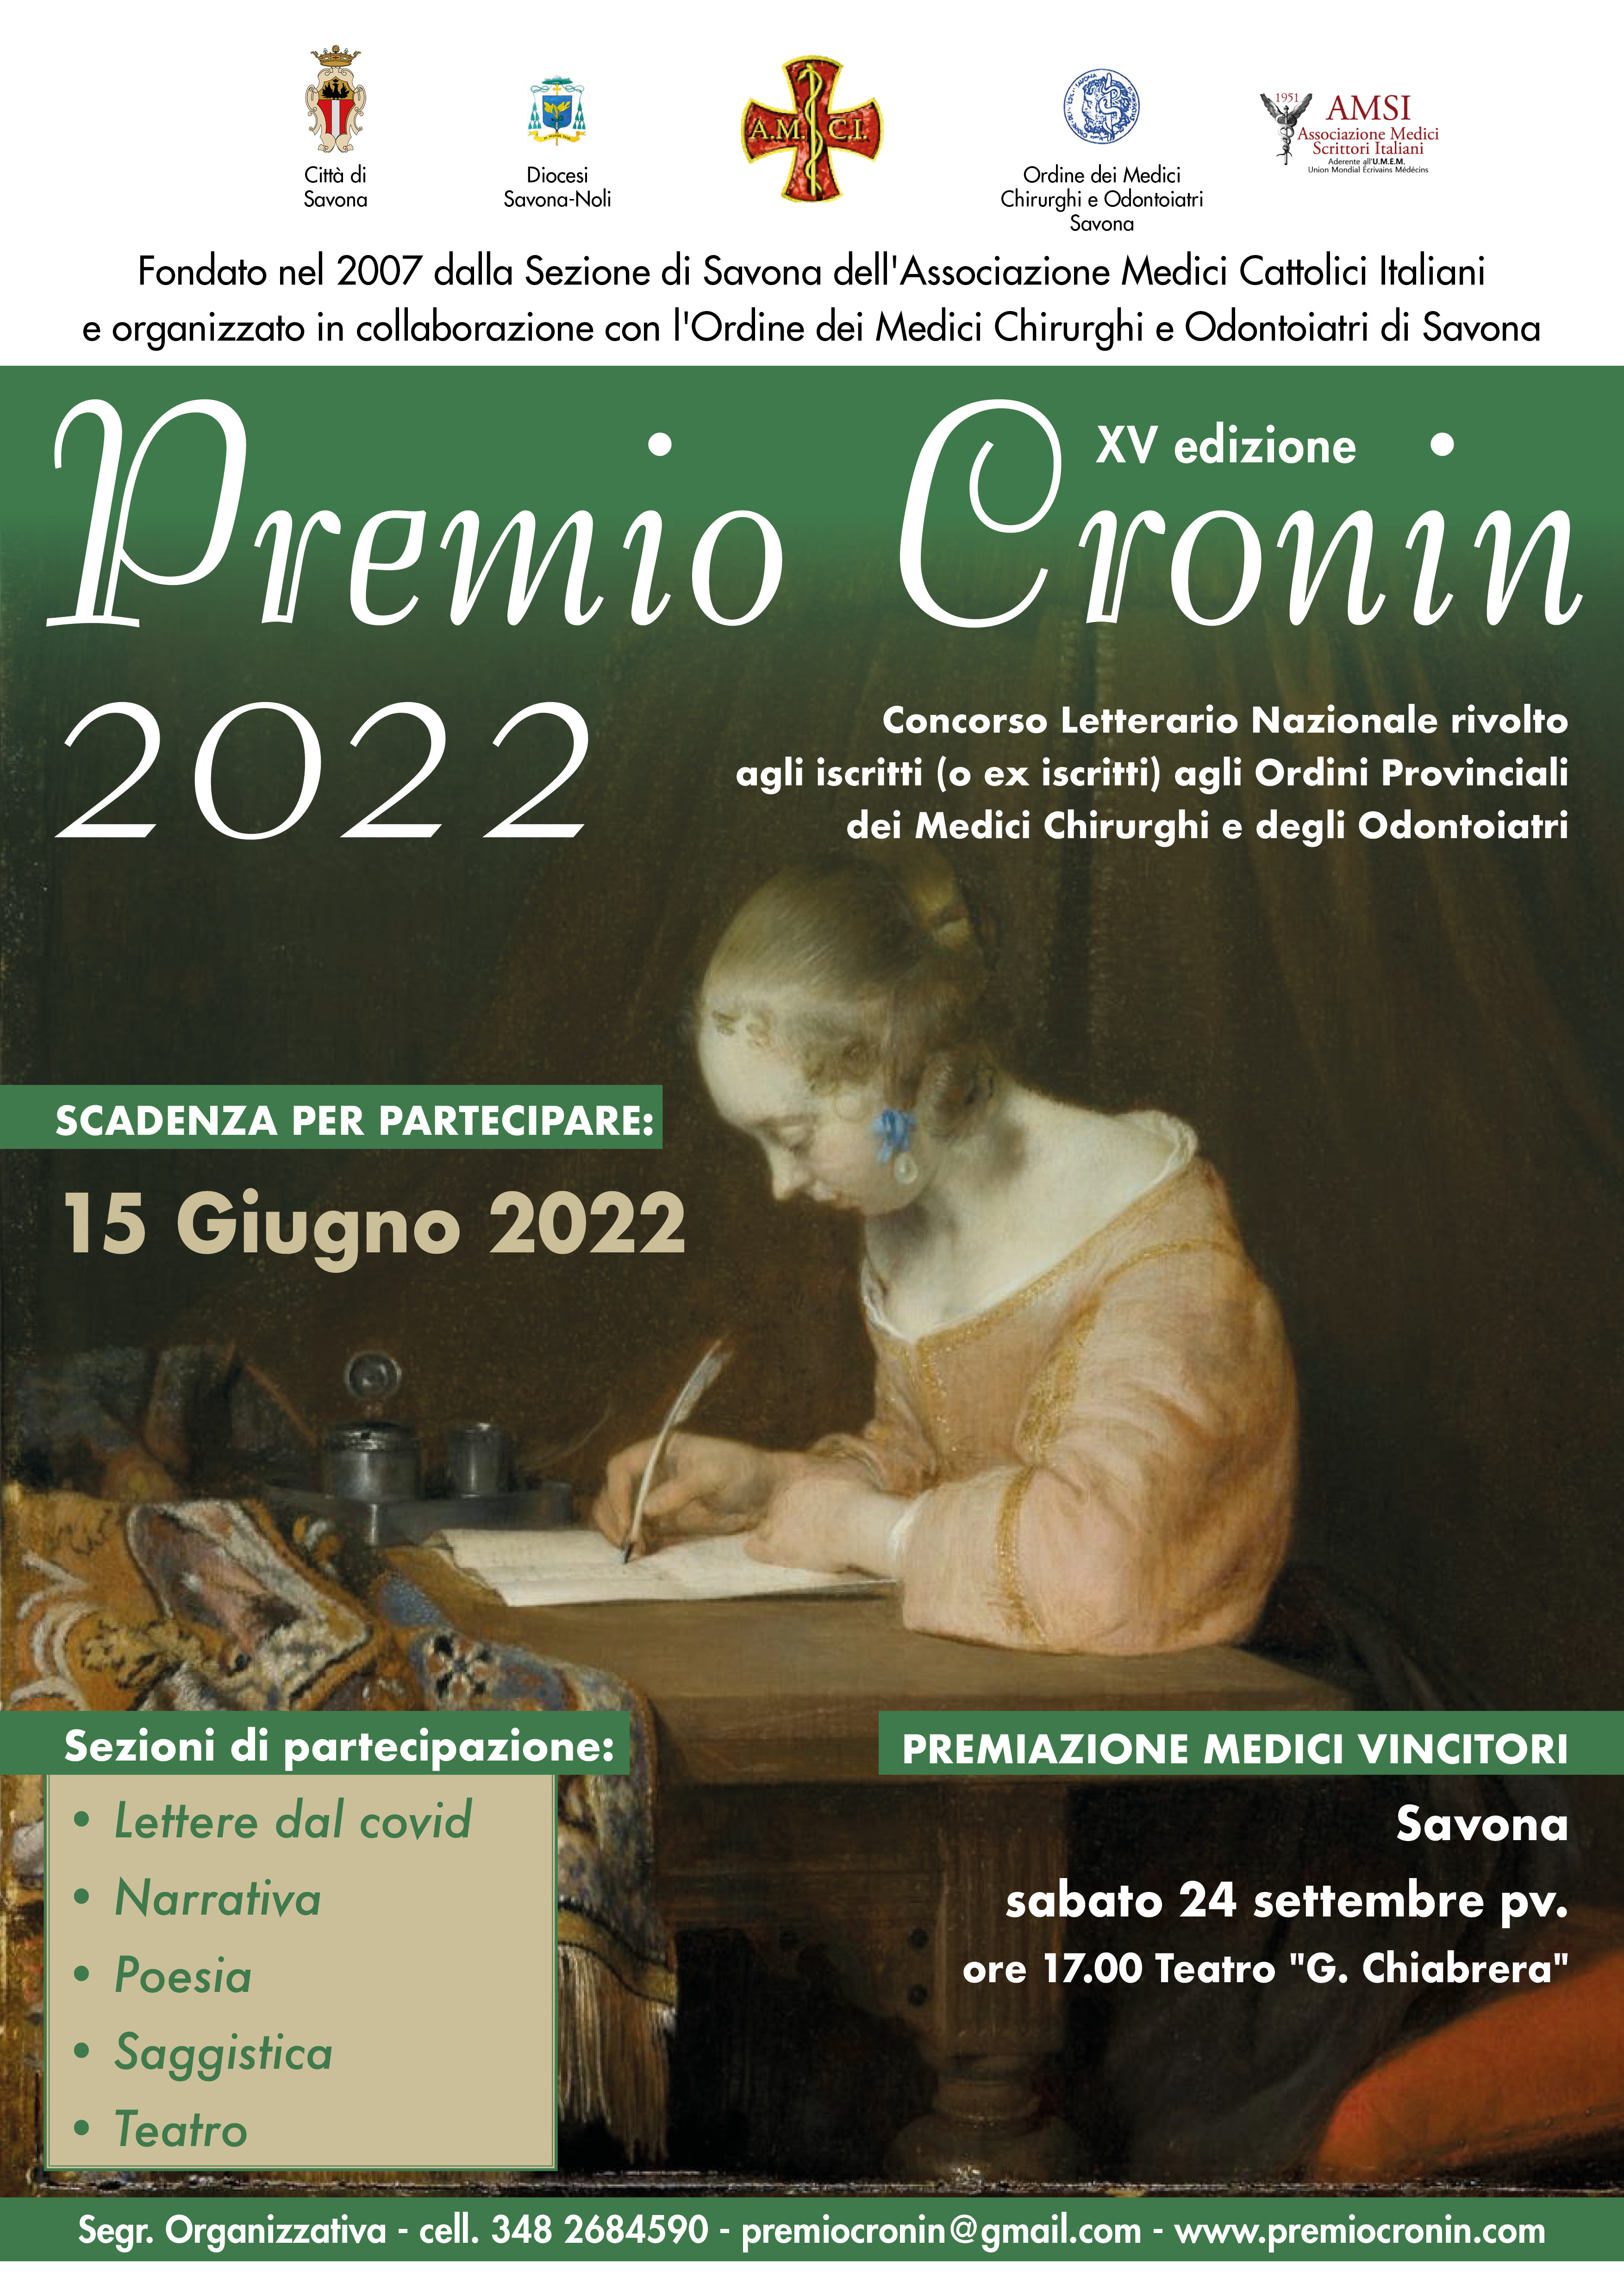 OMCeO della Provincia di Savona: Premio CRONIN 2022 – Scadenza per la partecipazione: Mercoledì 15 giugno 2022